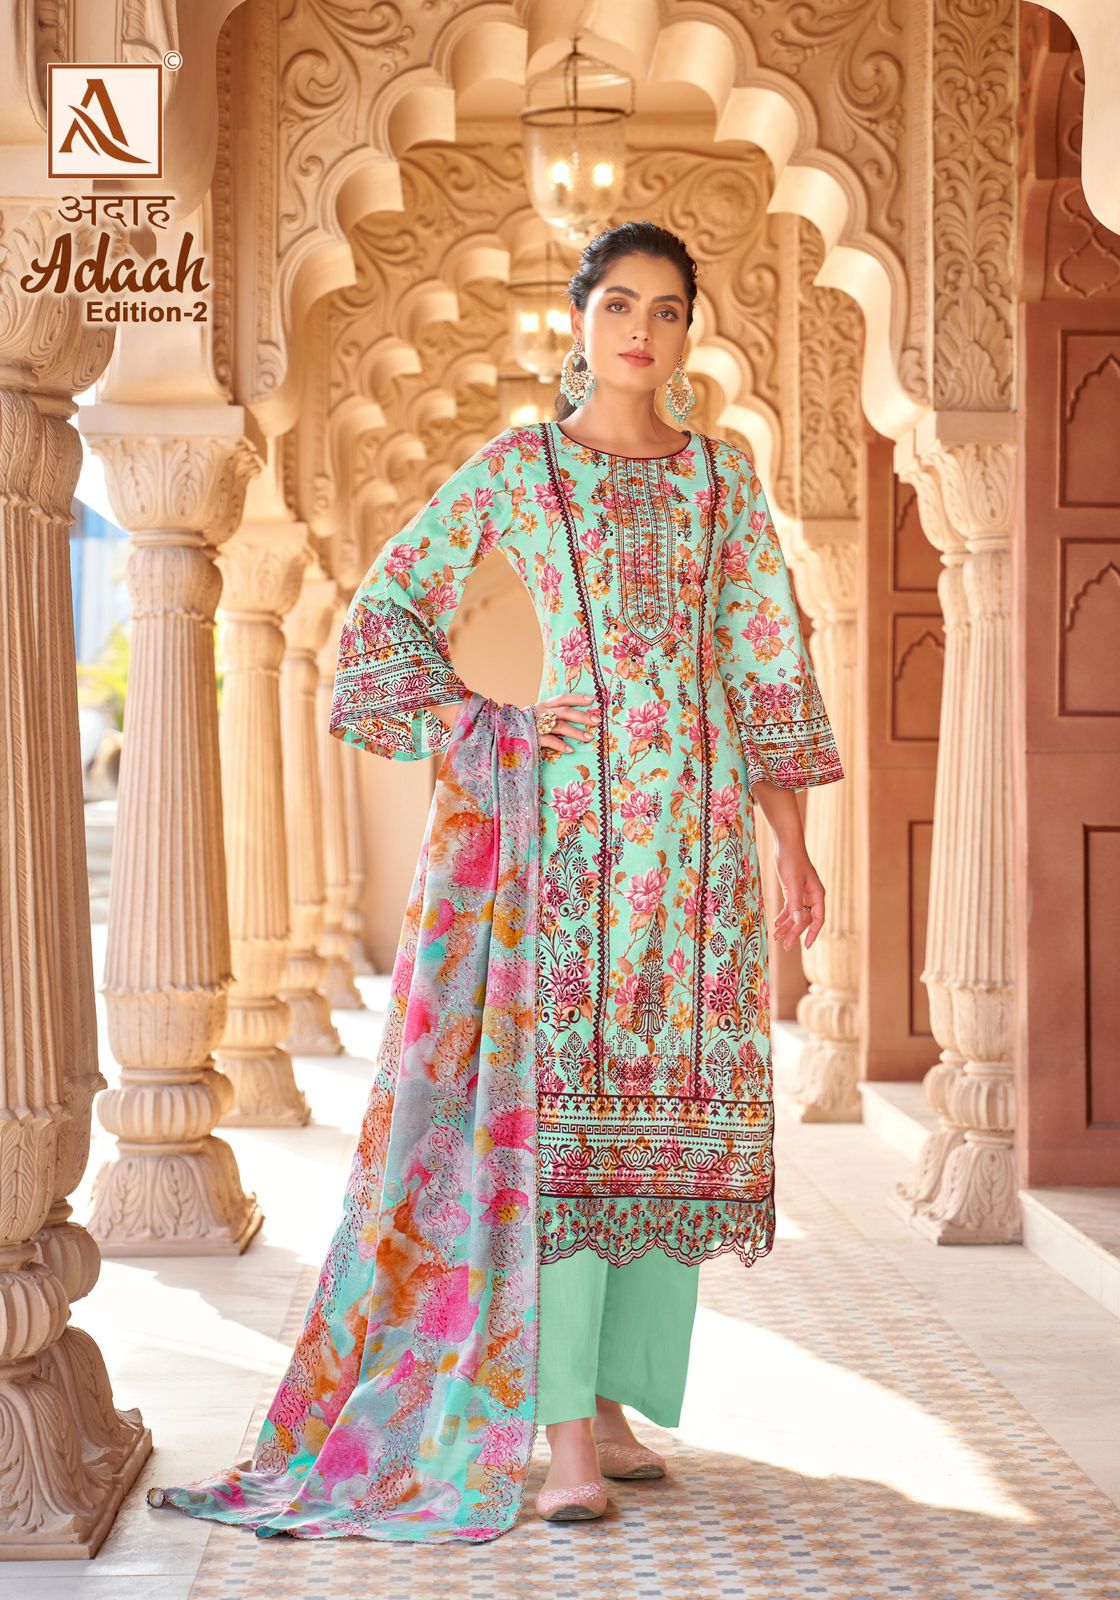 Adaah Vol 2 Alok Cambric Cotton Karachi Salwar Suits